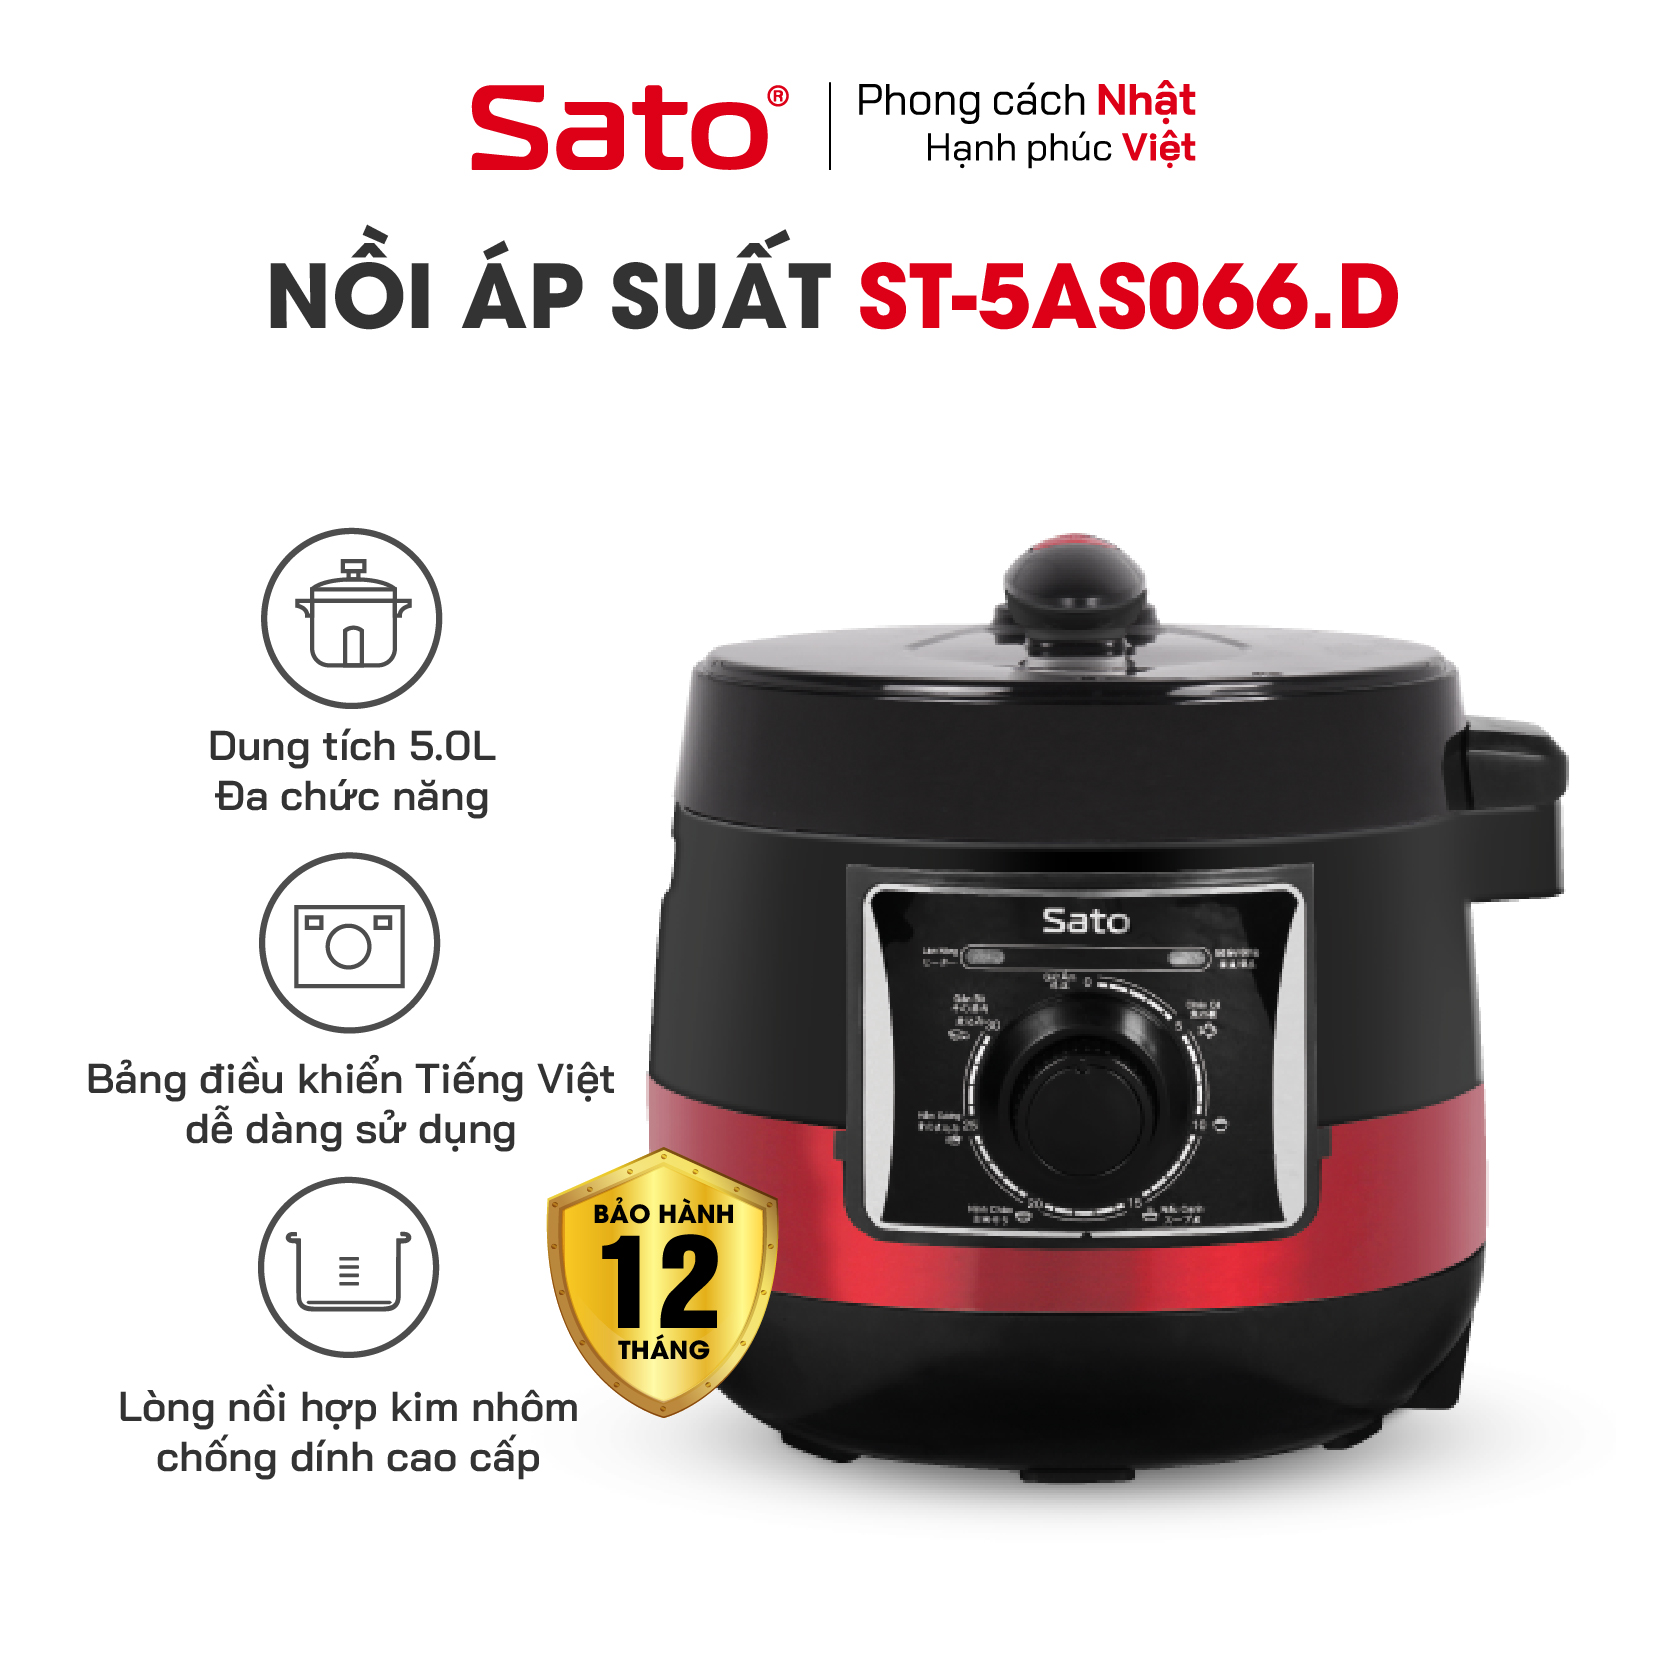 Nồi áp suất đa năng SATO 5AS066.D 5.0L - Bảng điều khiển Tiếng Việt dễ hiểu, dễ thao tác, an toàn khi dùng với van xả áp, van khóa hiện đại - Miễn phí vận chuyển toàn quốc - Hàng chính hãng